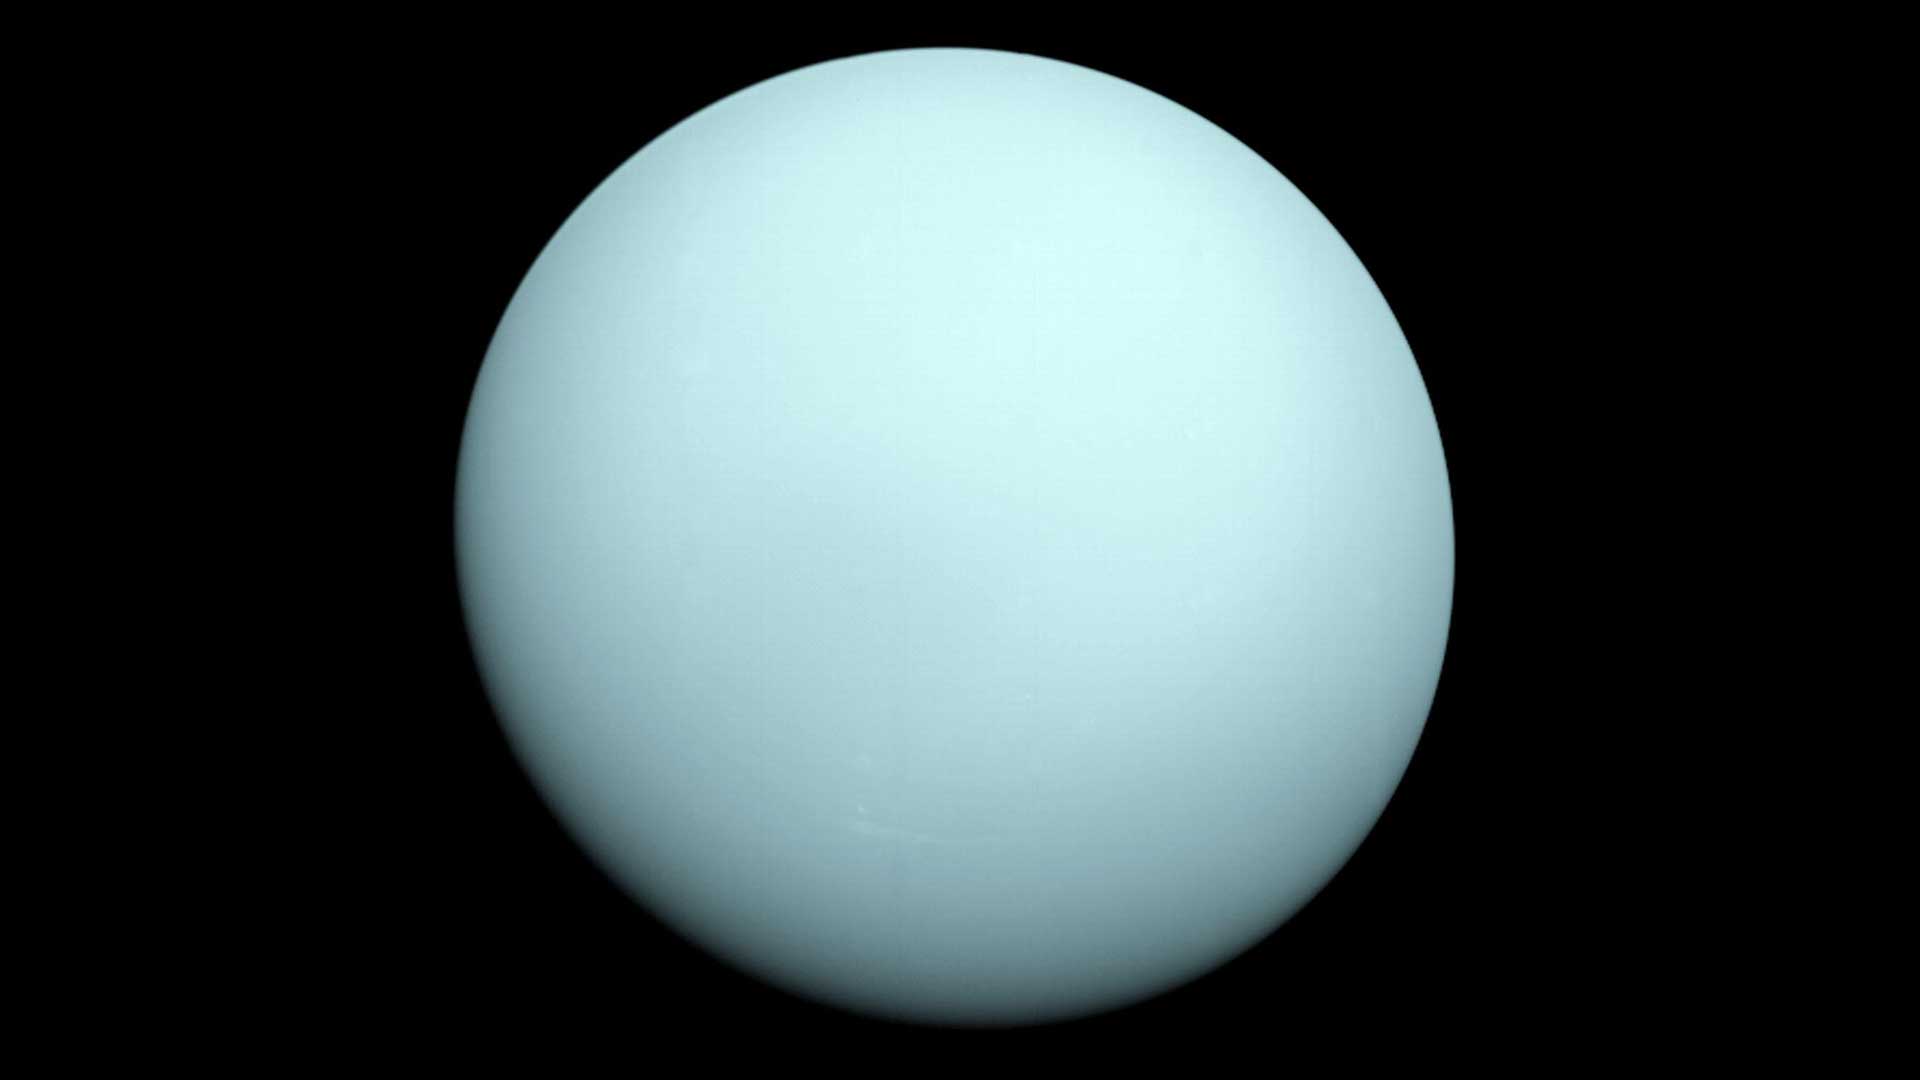 Il pianeta blu pallido Urano è visto contro l'oscurità dello spazio in un'immagine della navicella spaziale Voyager 2.